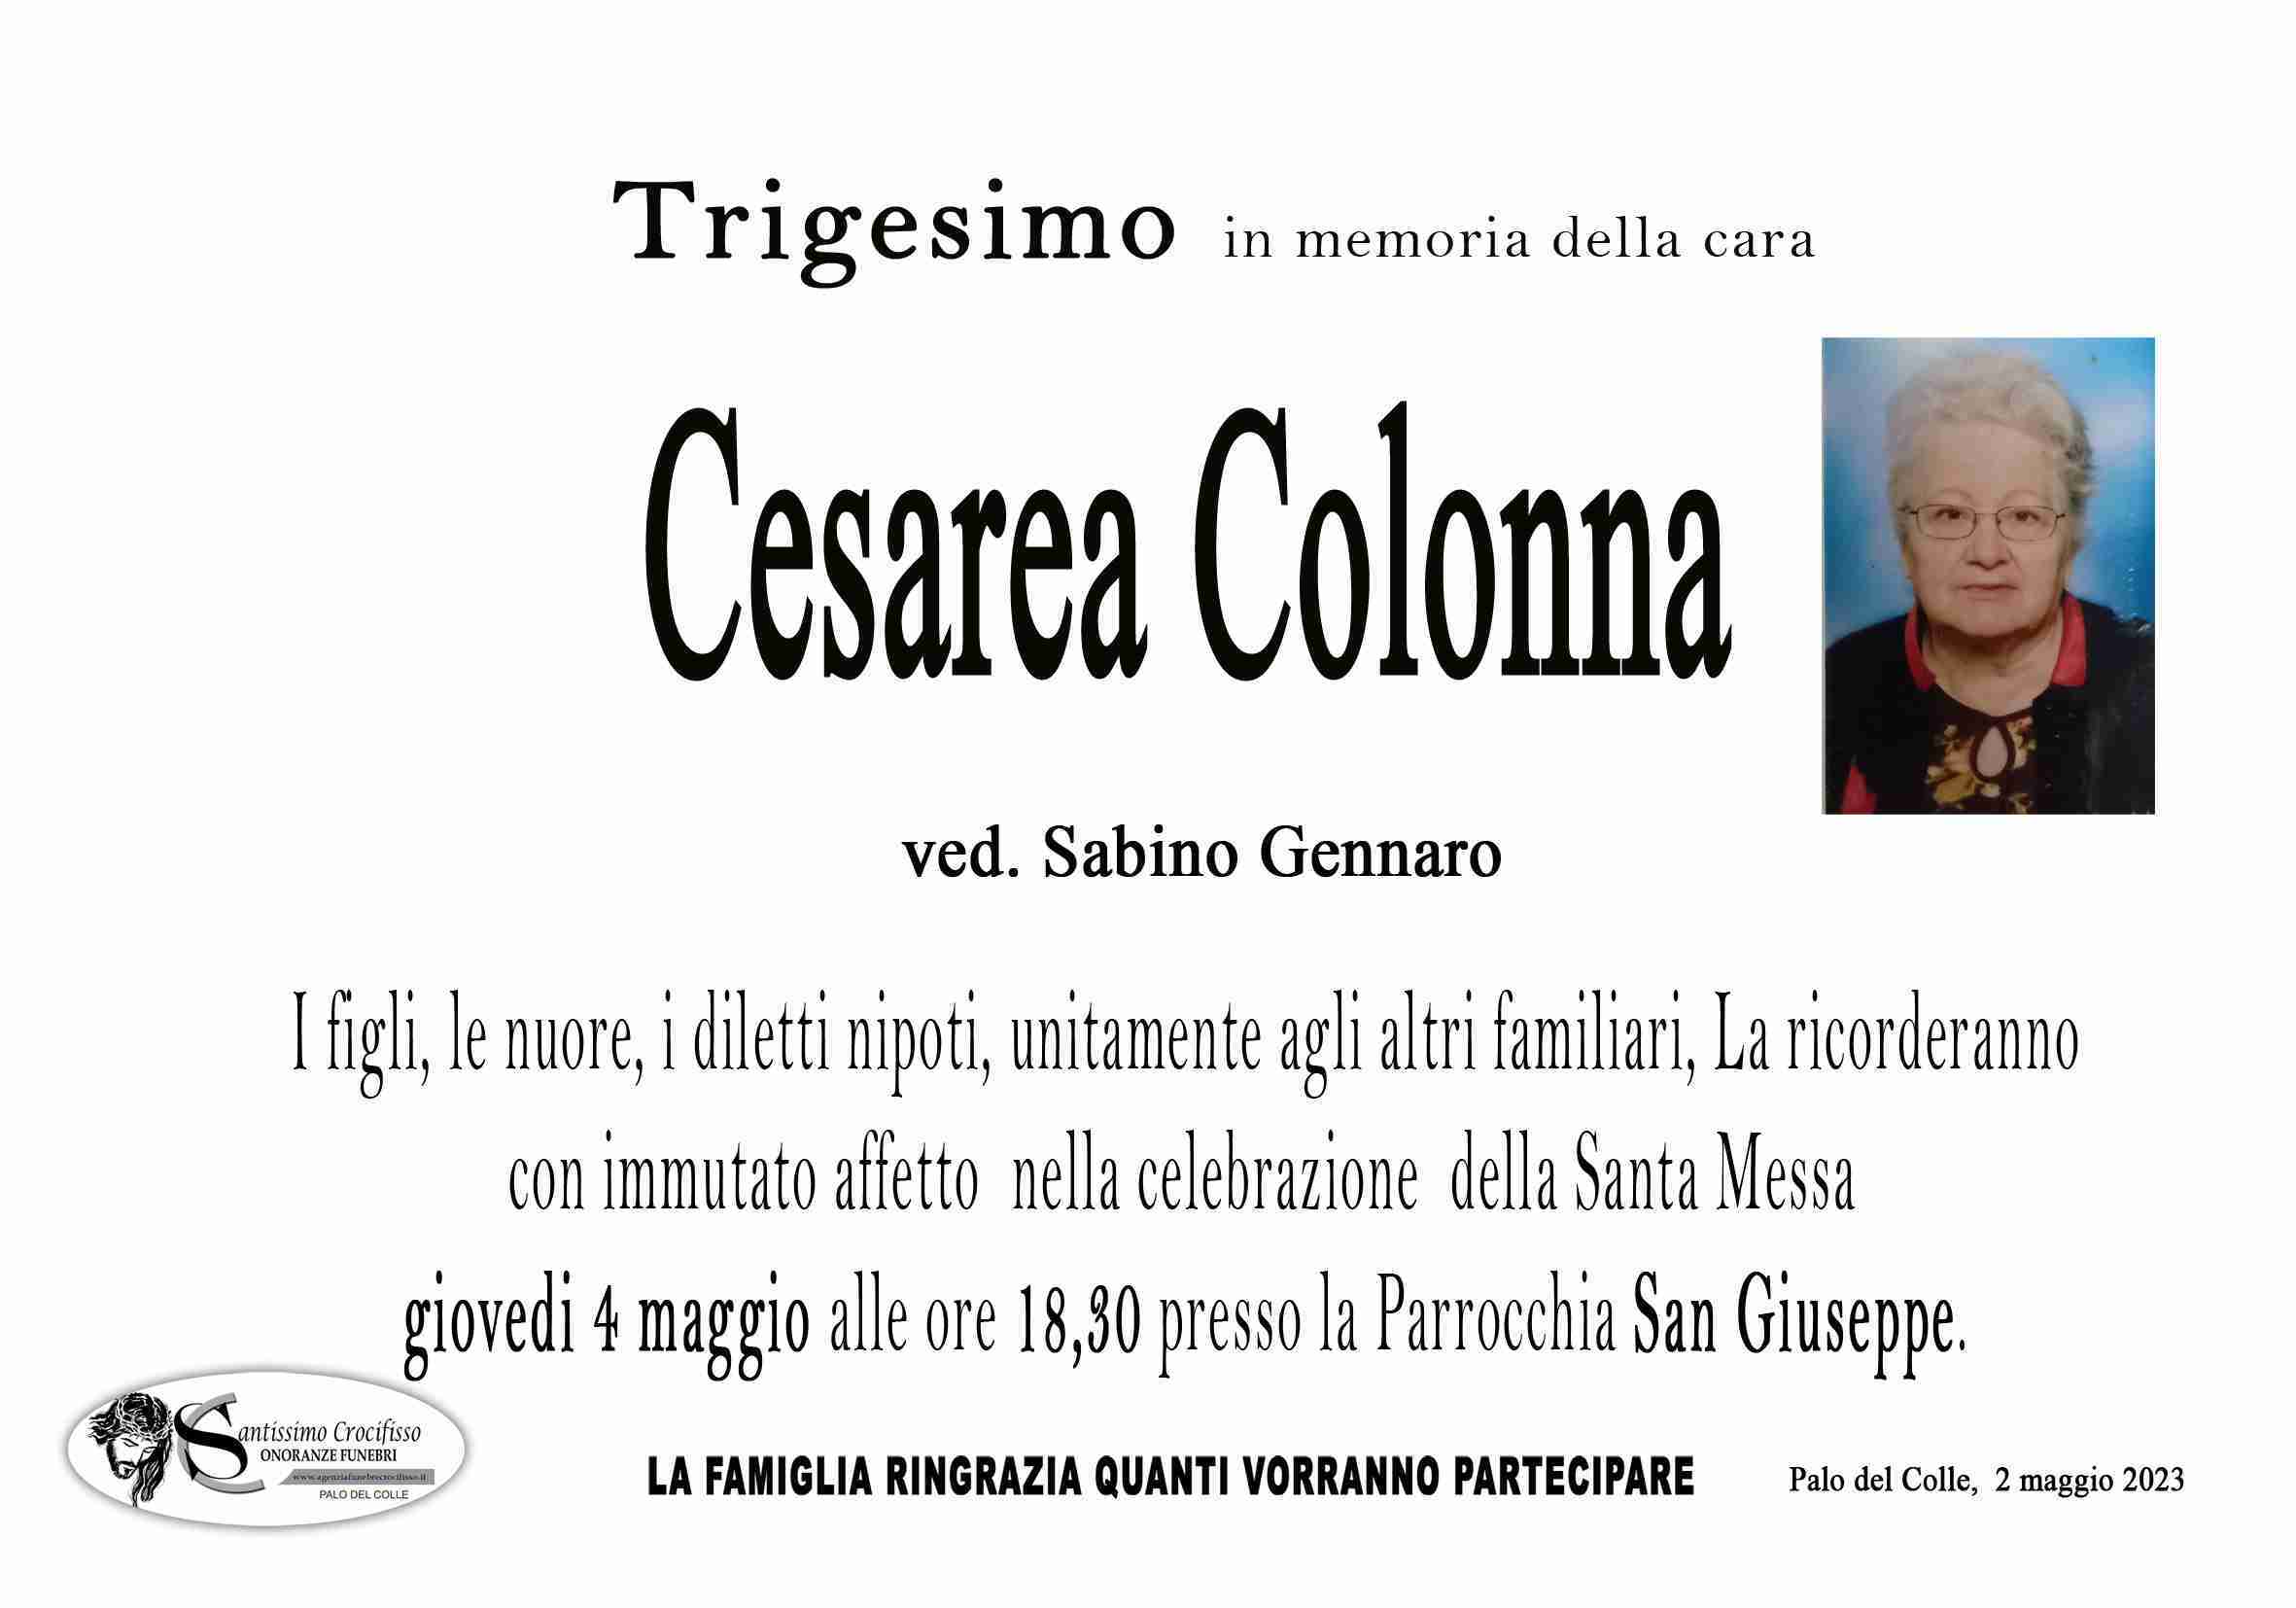 Cesarea Colonna